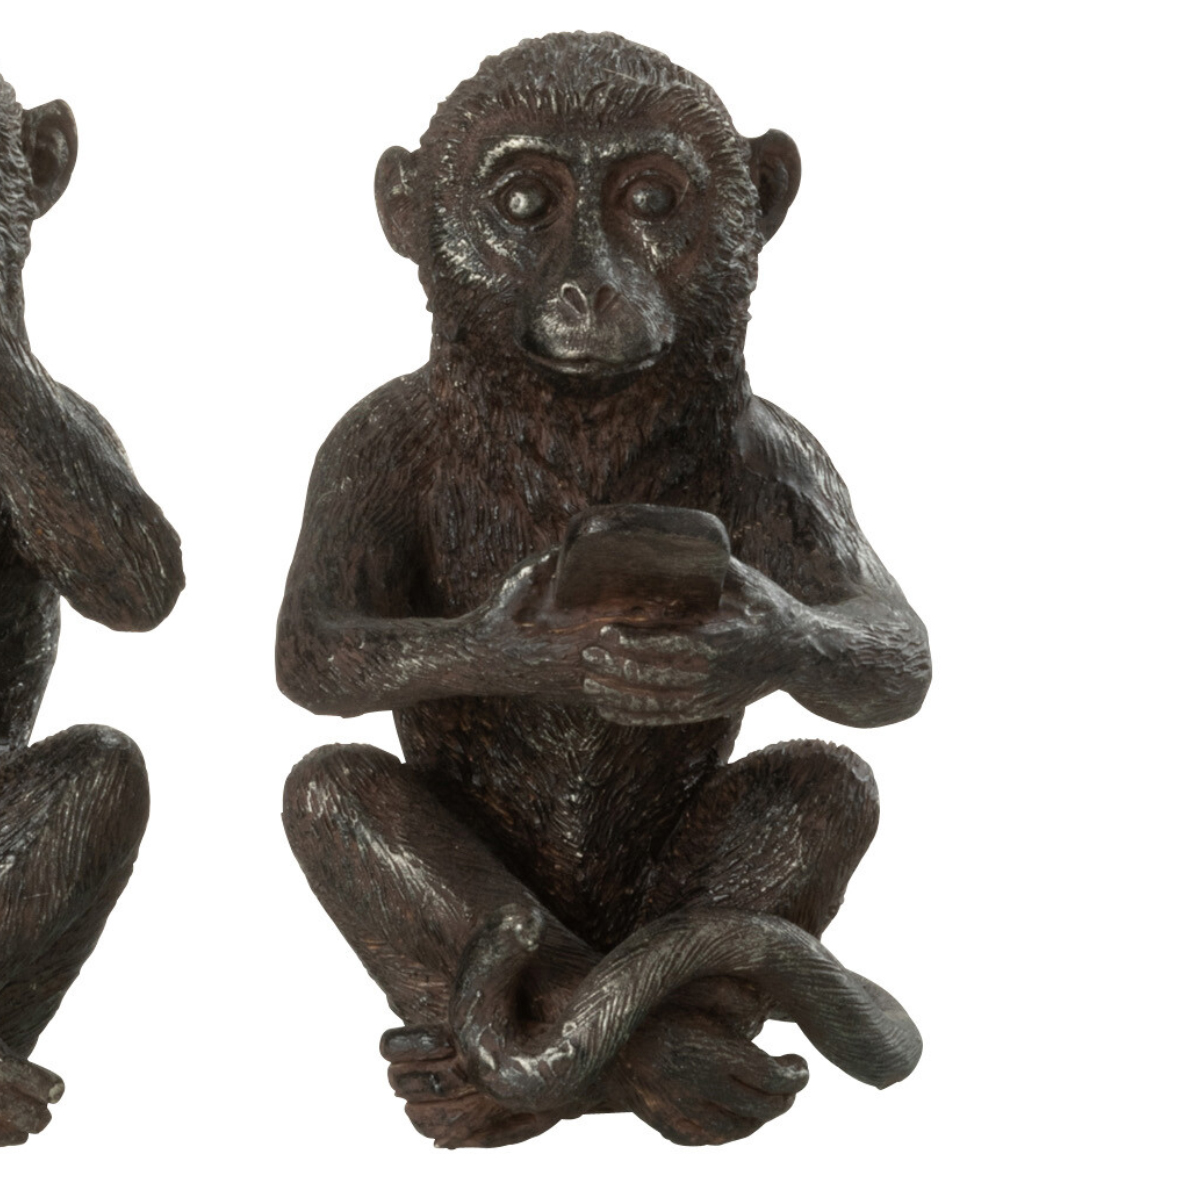 4 Statuettes les singes de la sagesse modernes